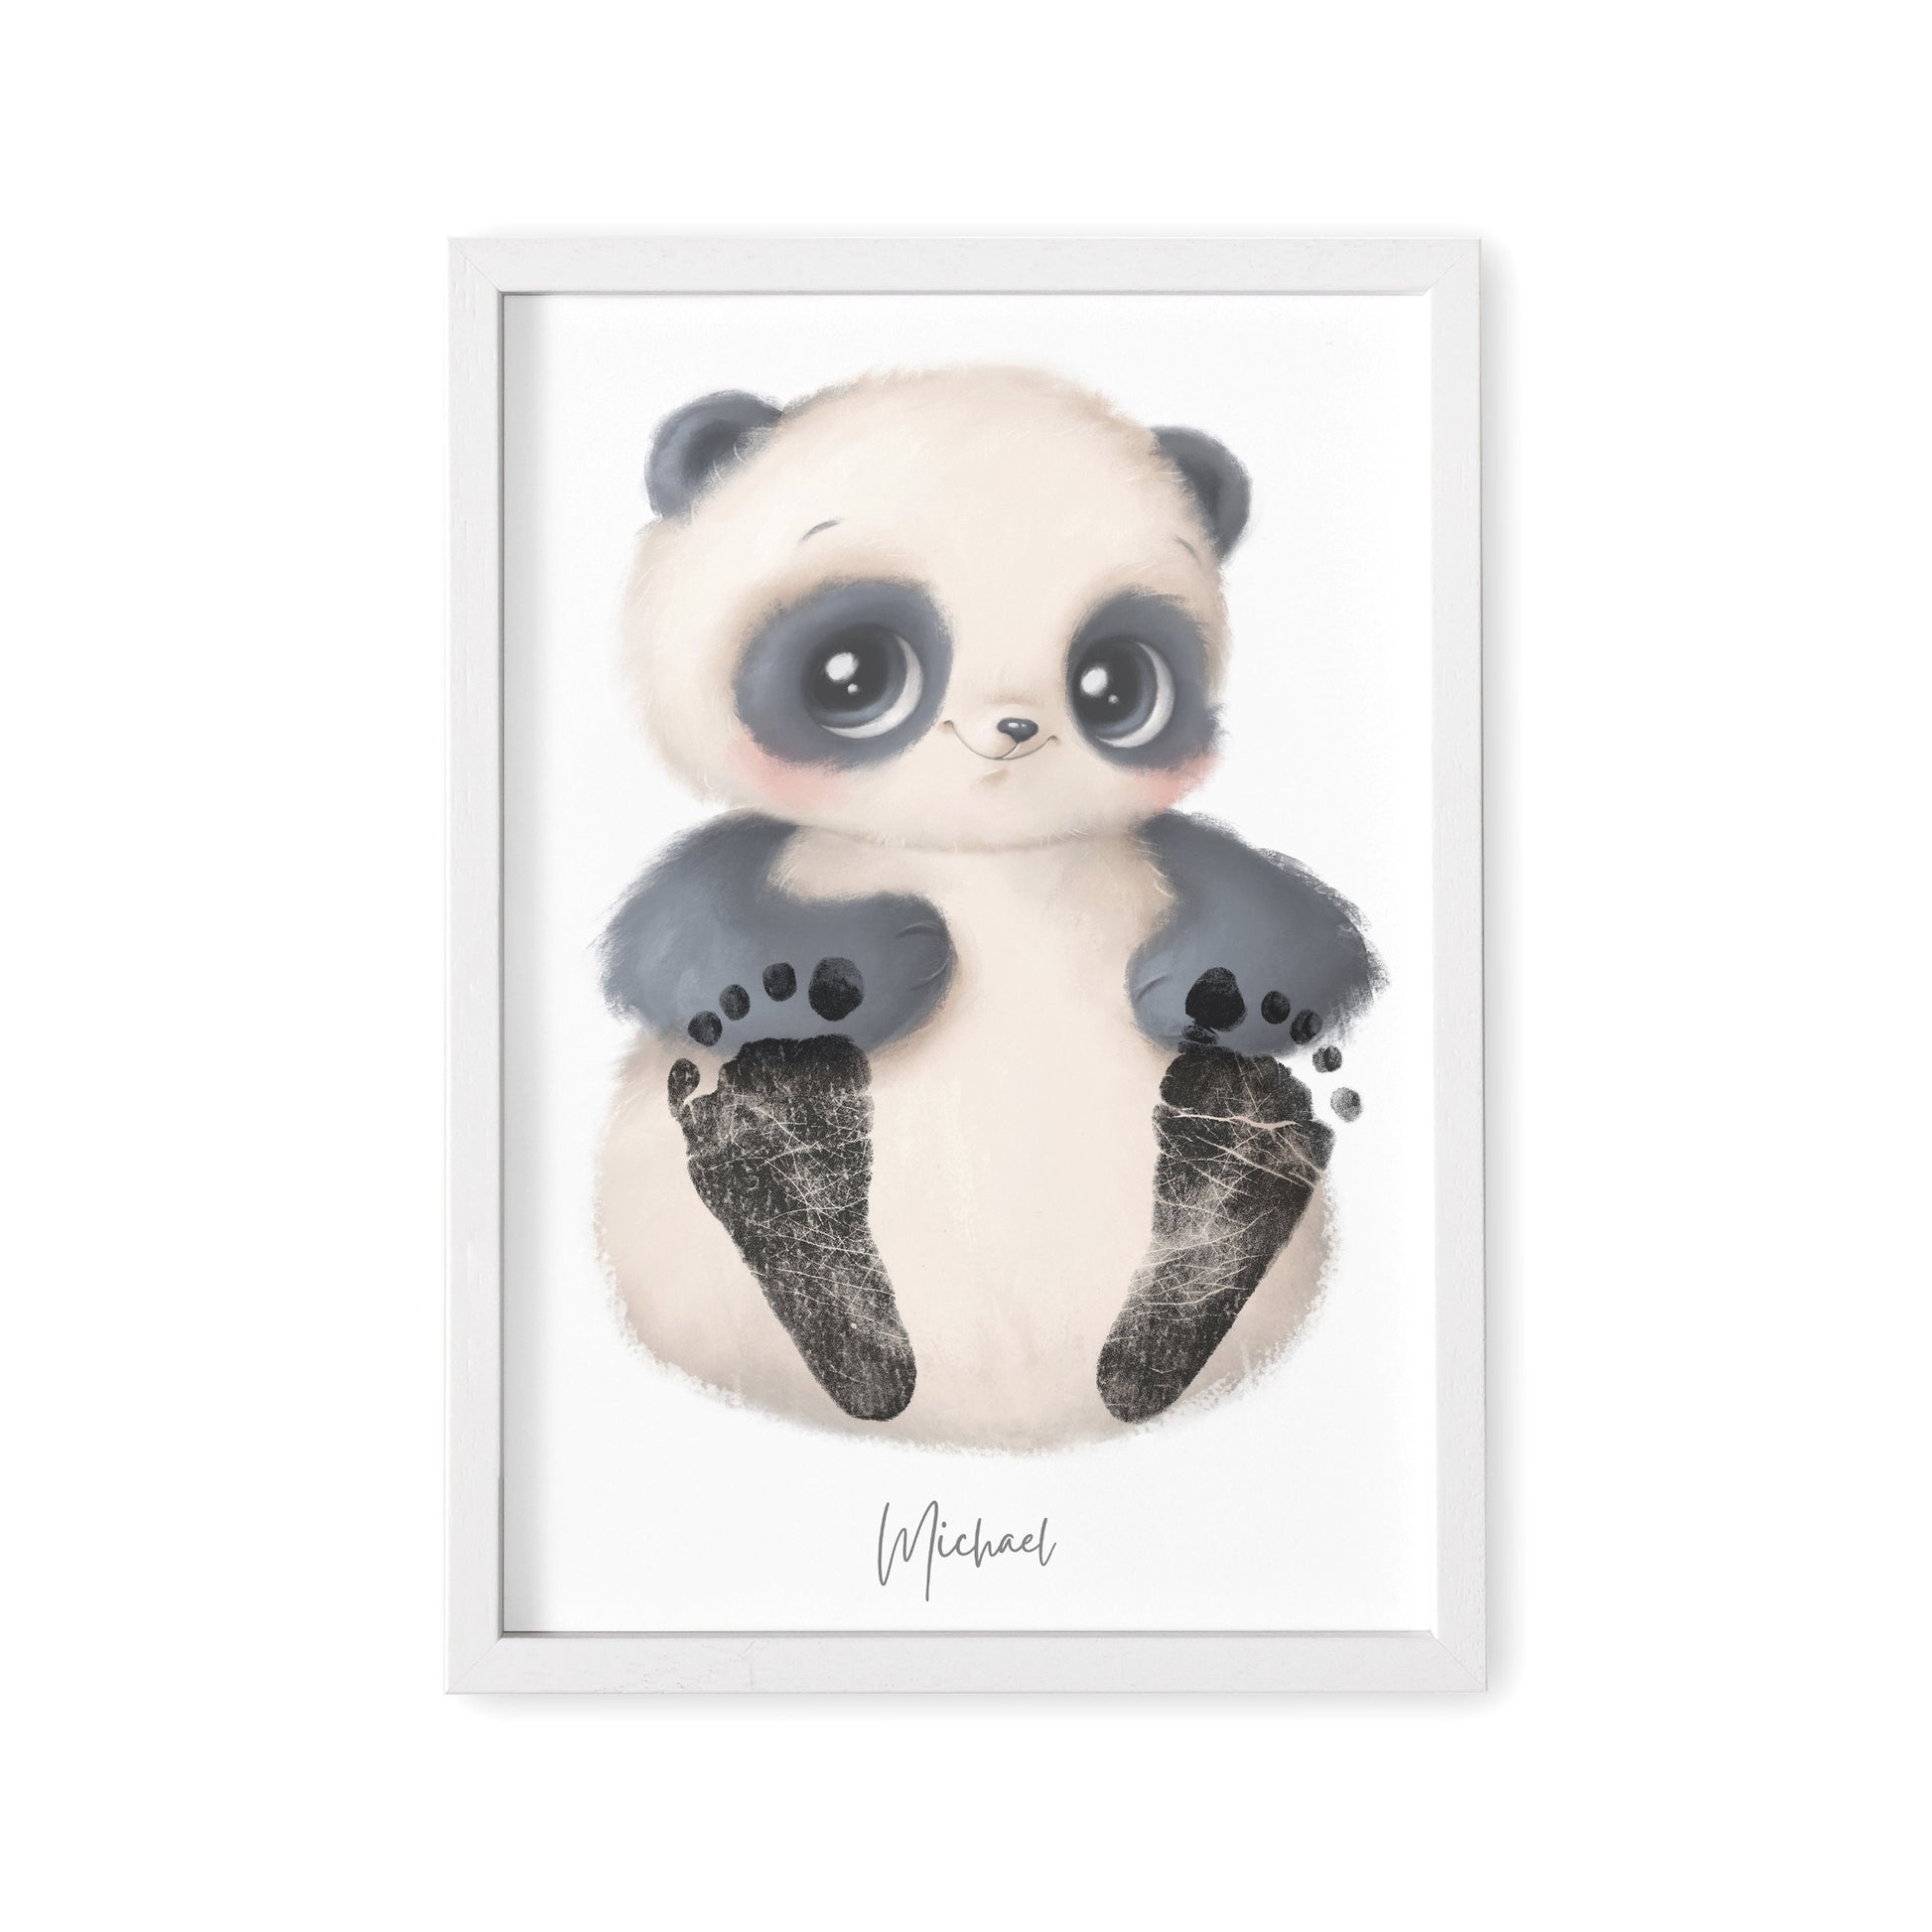 Baby Fußabdruck Bild Panda Fußabdrücke Personalisiert Babygeschenk zur Geburt Geschenk Kleinkind Kinderzimmerdeko (Ohne Farbe)